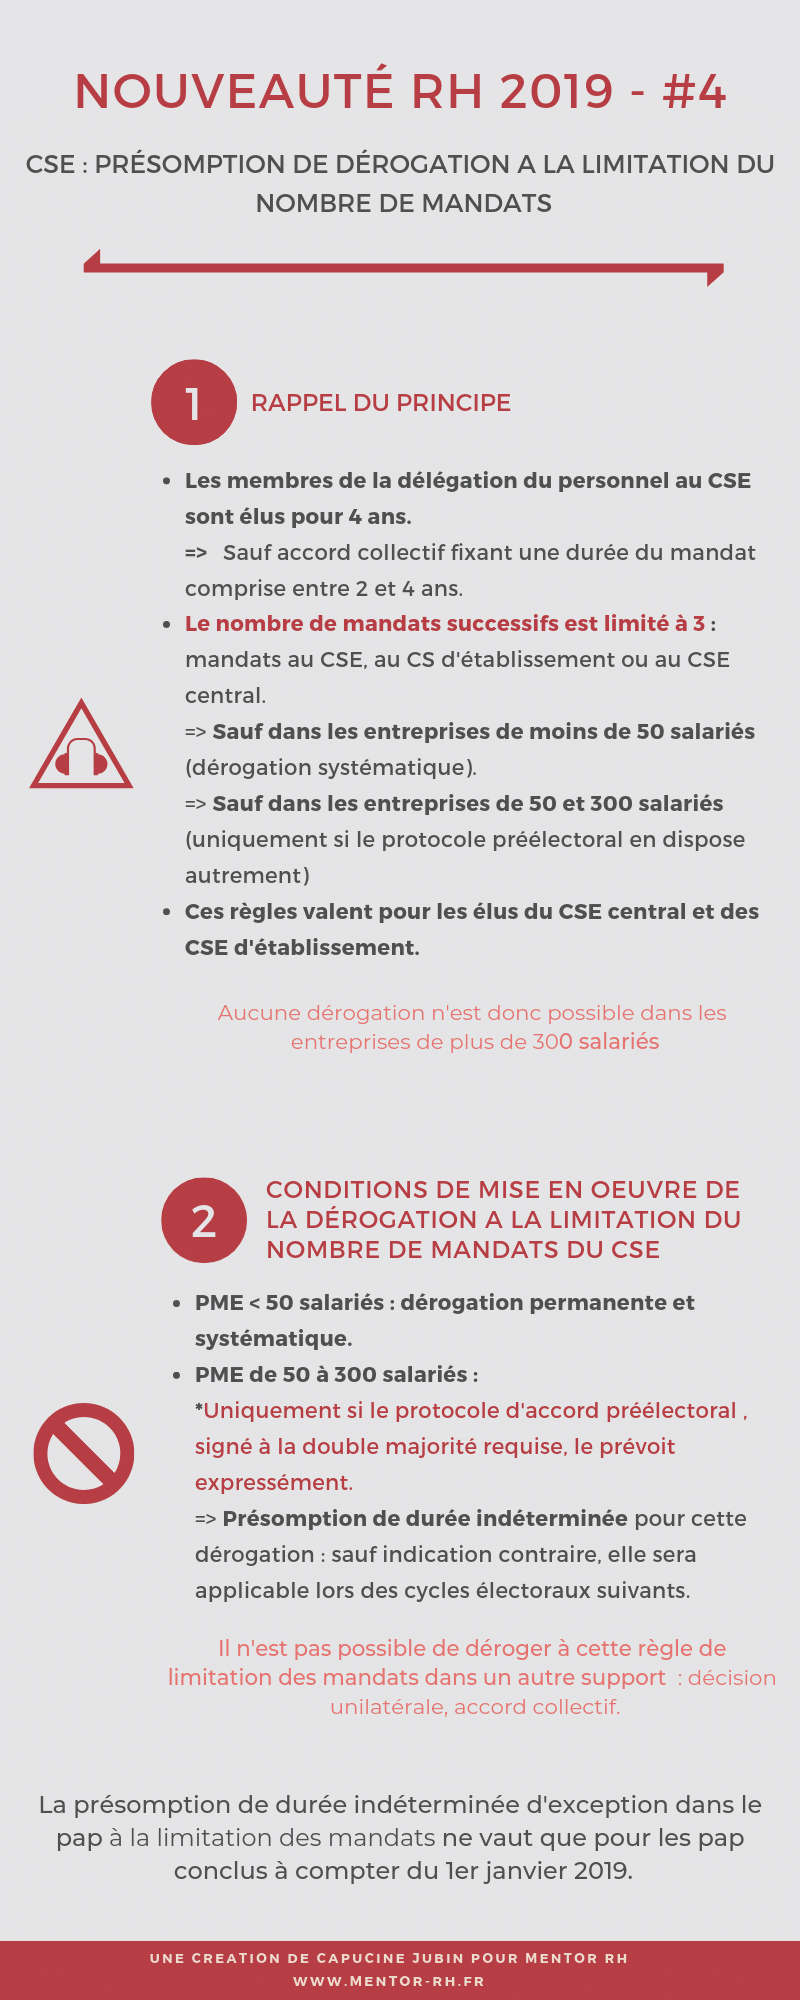 Infographie #4 NOUVEAUTE RH 2019 Présomption dérogation mandat CSE